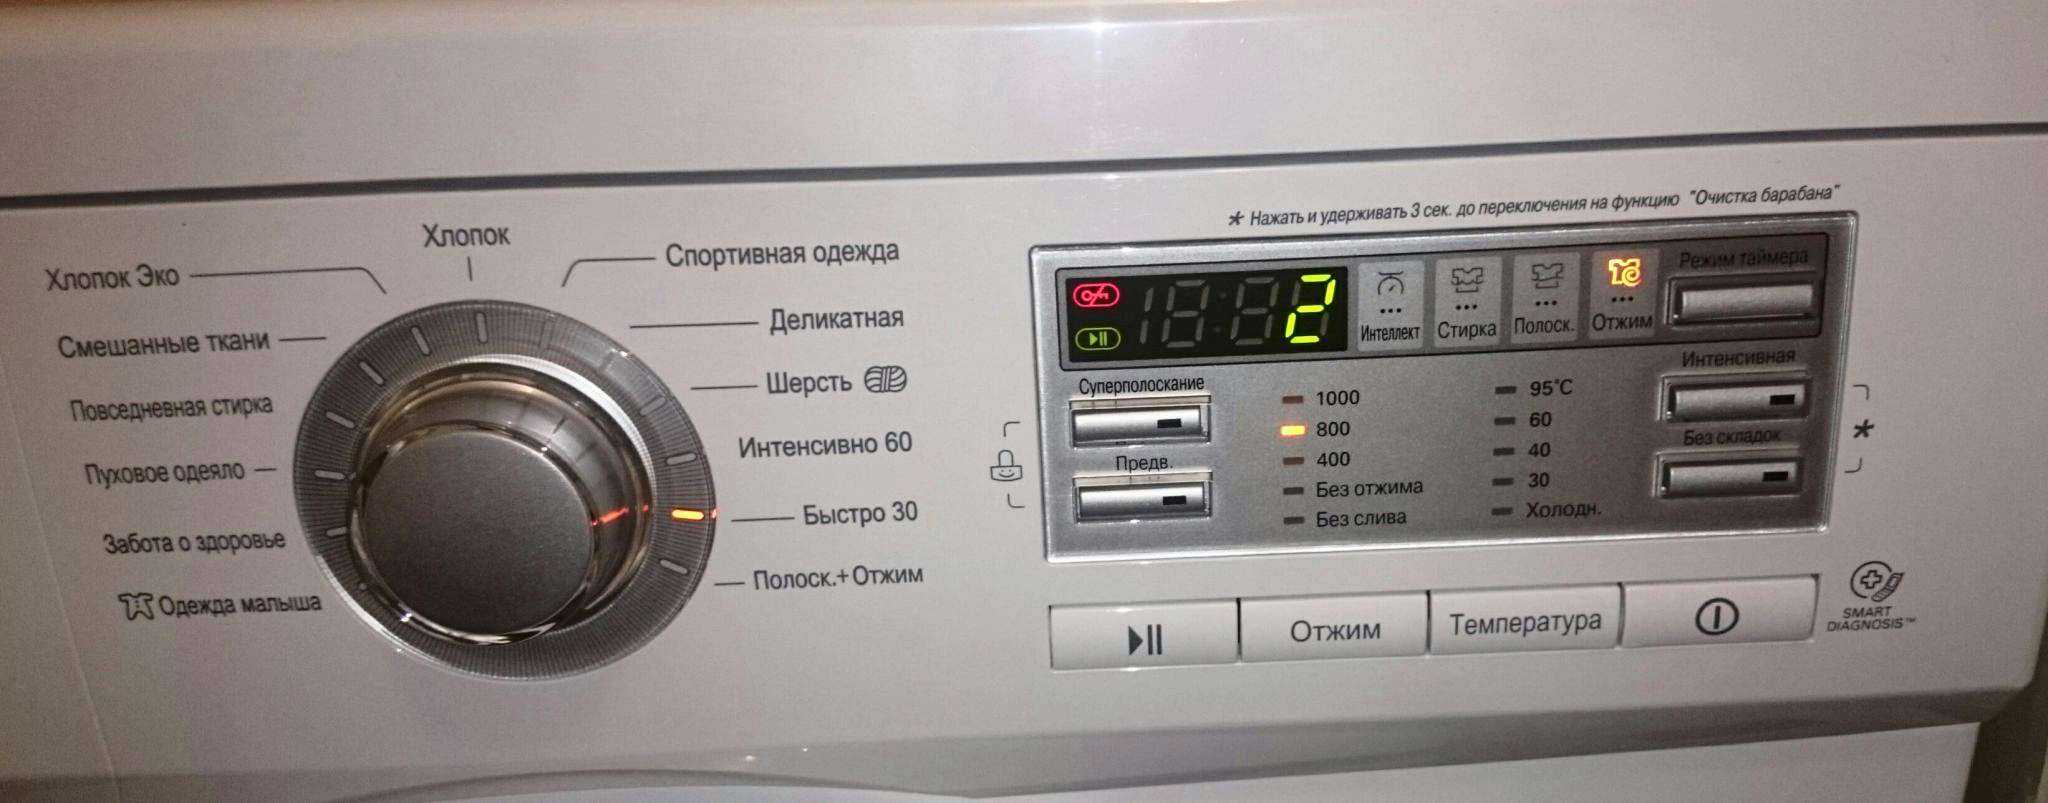 Ошибки стиральной машины lg - выдает коды ое, de, ue, cl, ie